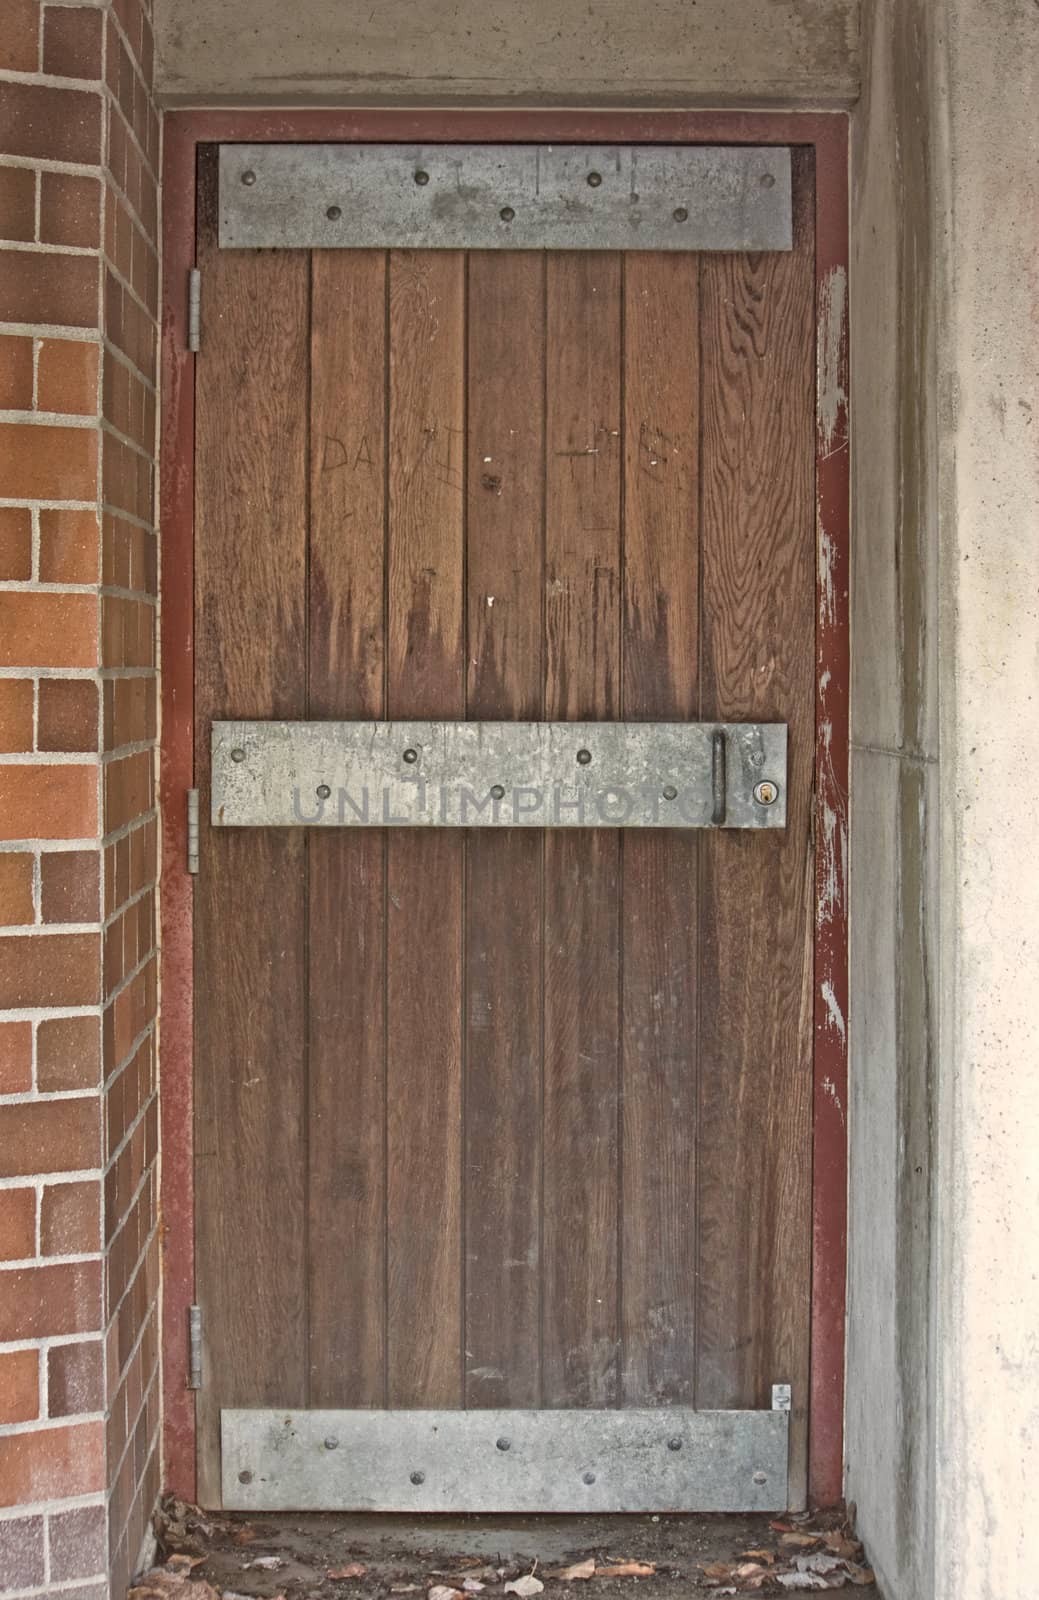 Old Looking Steel Reinforced Door  by mwp1969